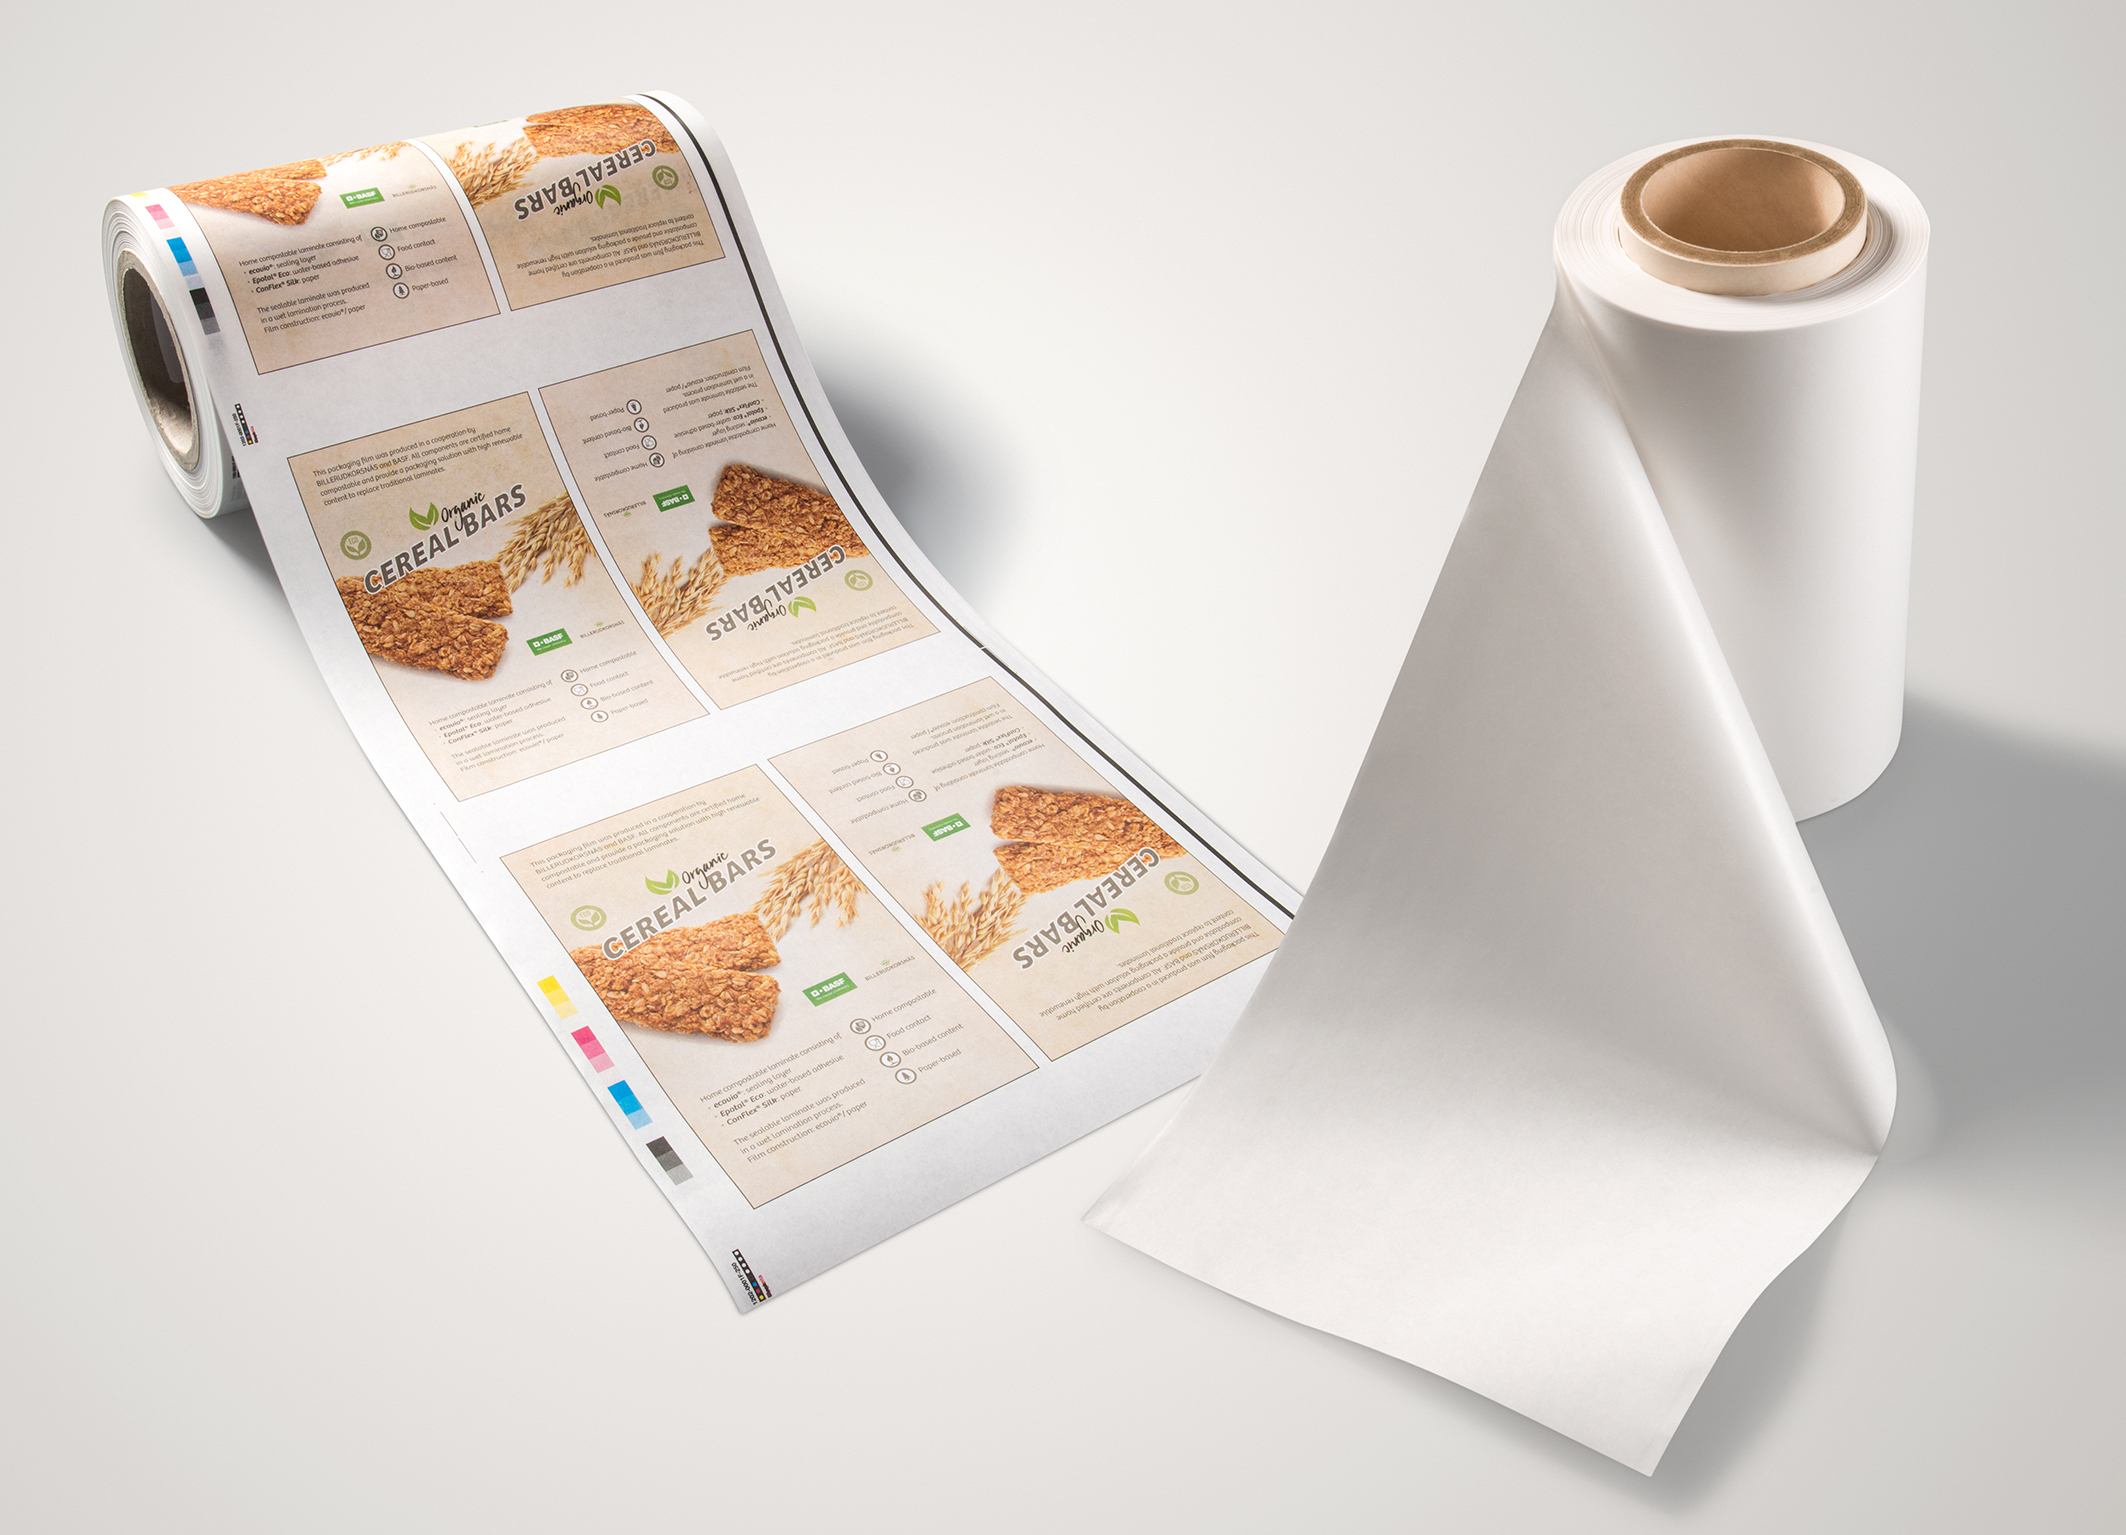 Flexible food Packaging, Biopolymers Food Packaging